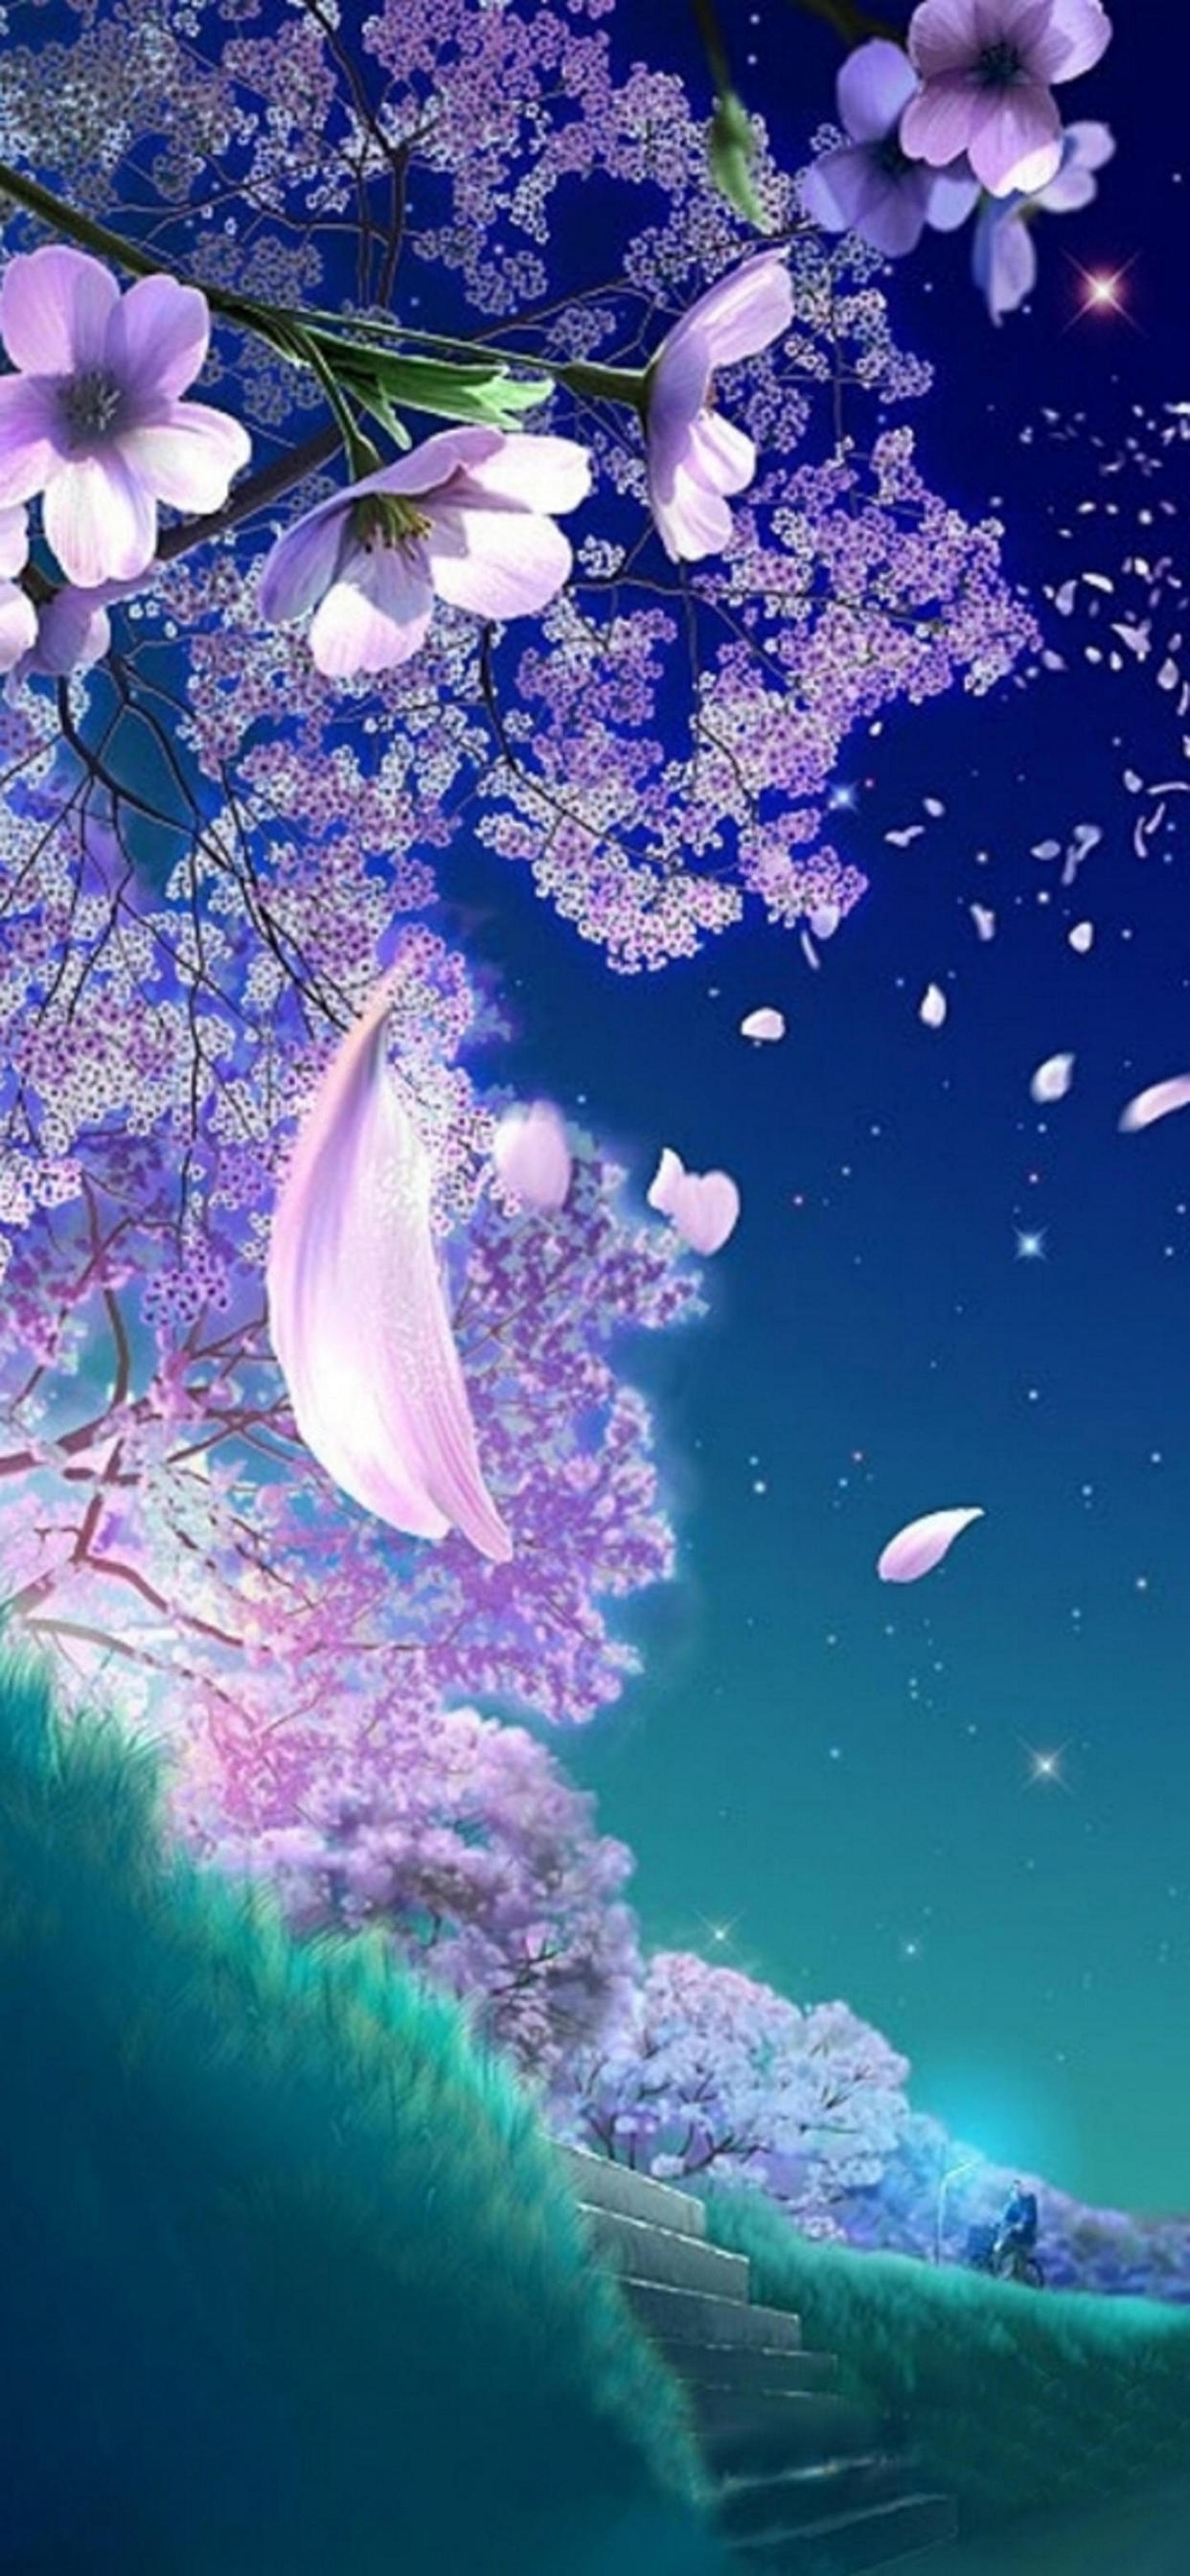 舞い散る桜の花びらのイラスト Iphone 12 Pro Max 壁紙 待ち受け スマラン